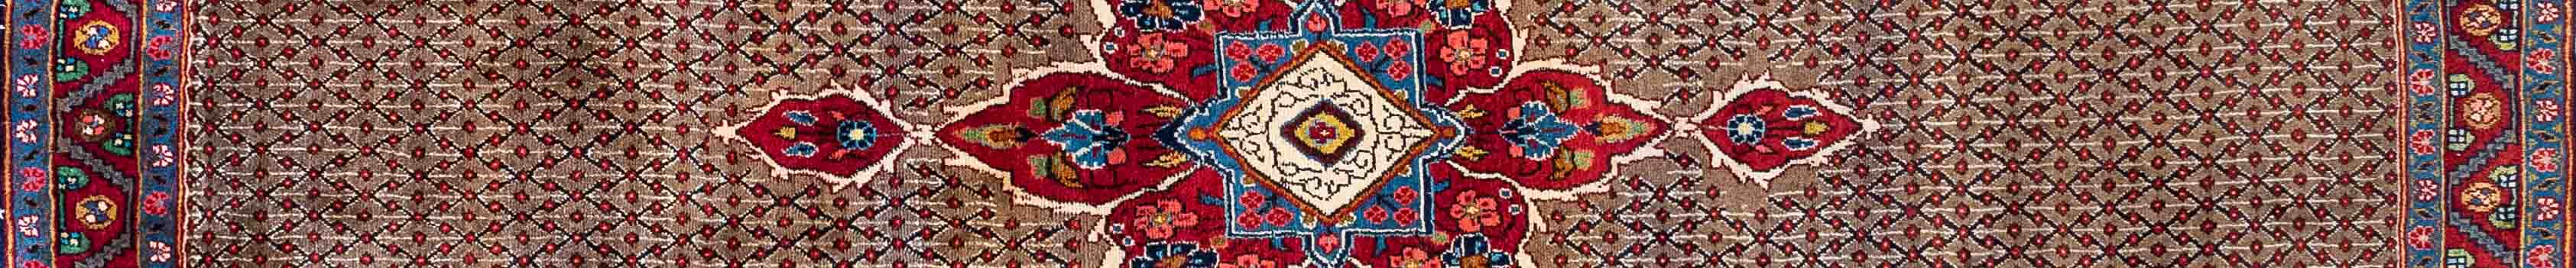 Koliai Persian Carpet Rug N1Carpet Canada Montreal Tapis Persan 1200